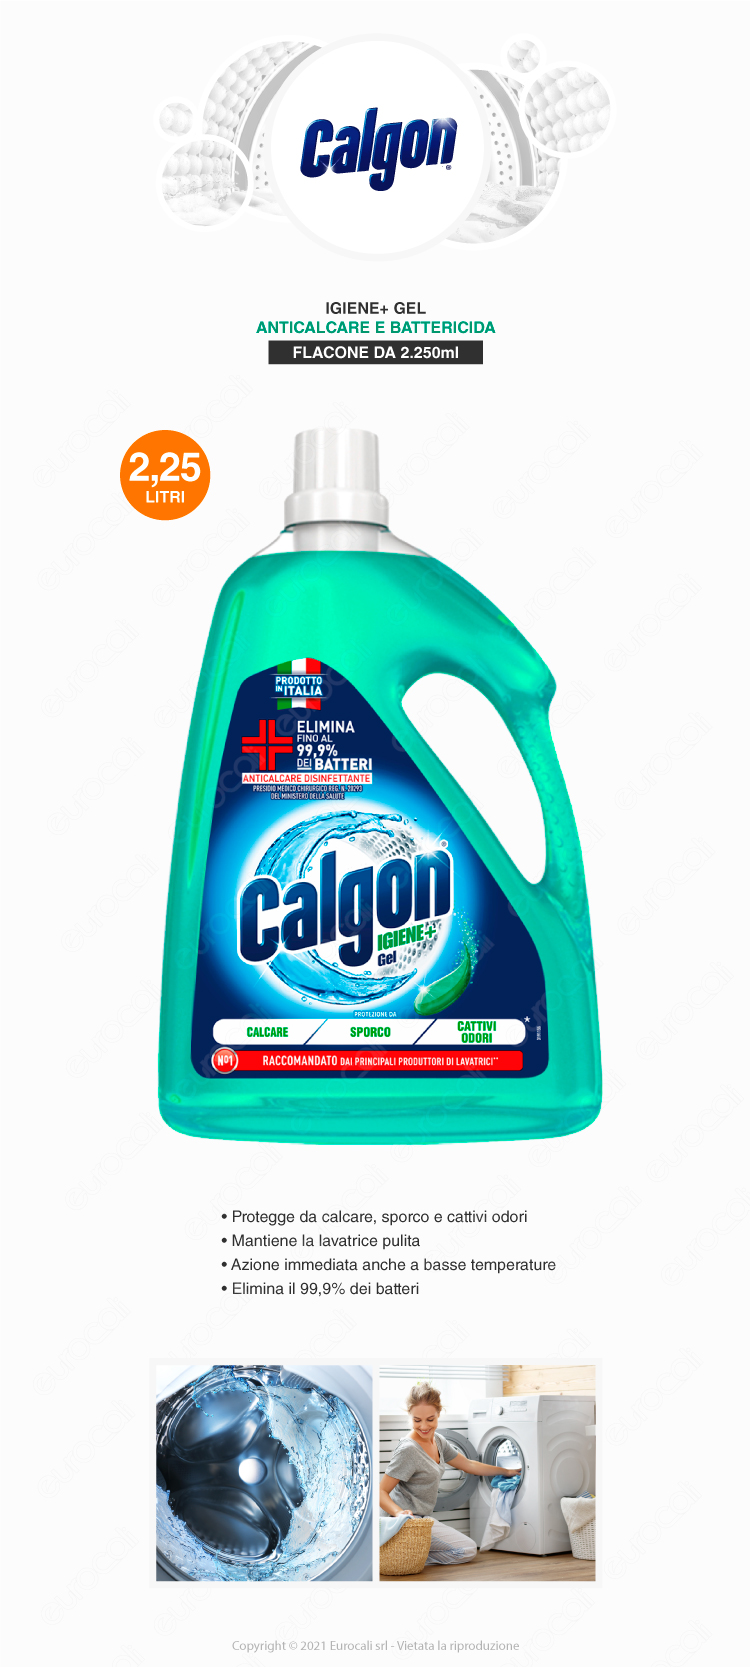 Igiene+ Gel Anticalcare Disinfettante Lavatrice 2,25L Calgon